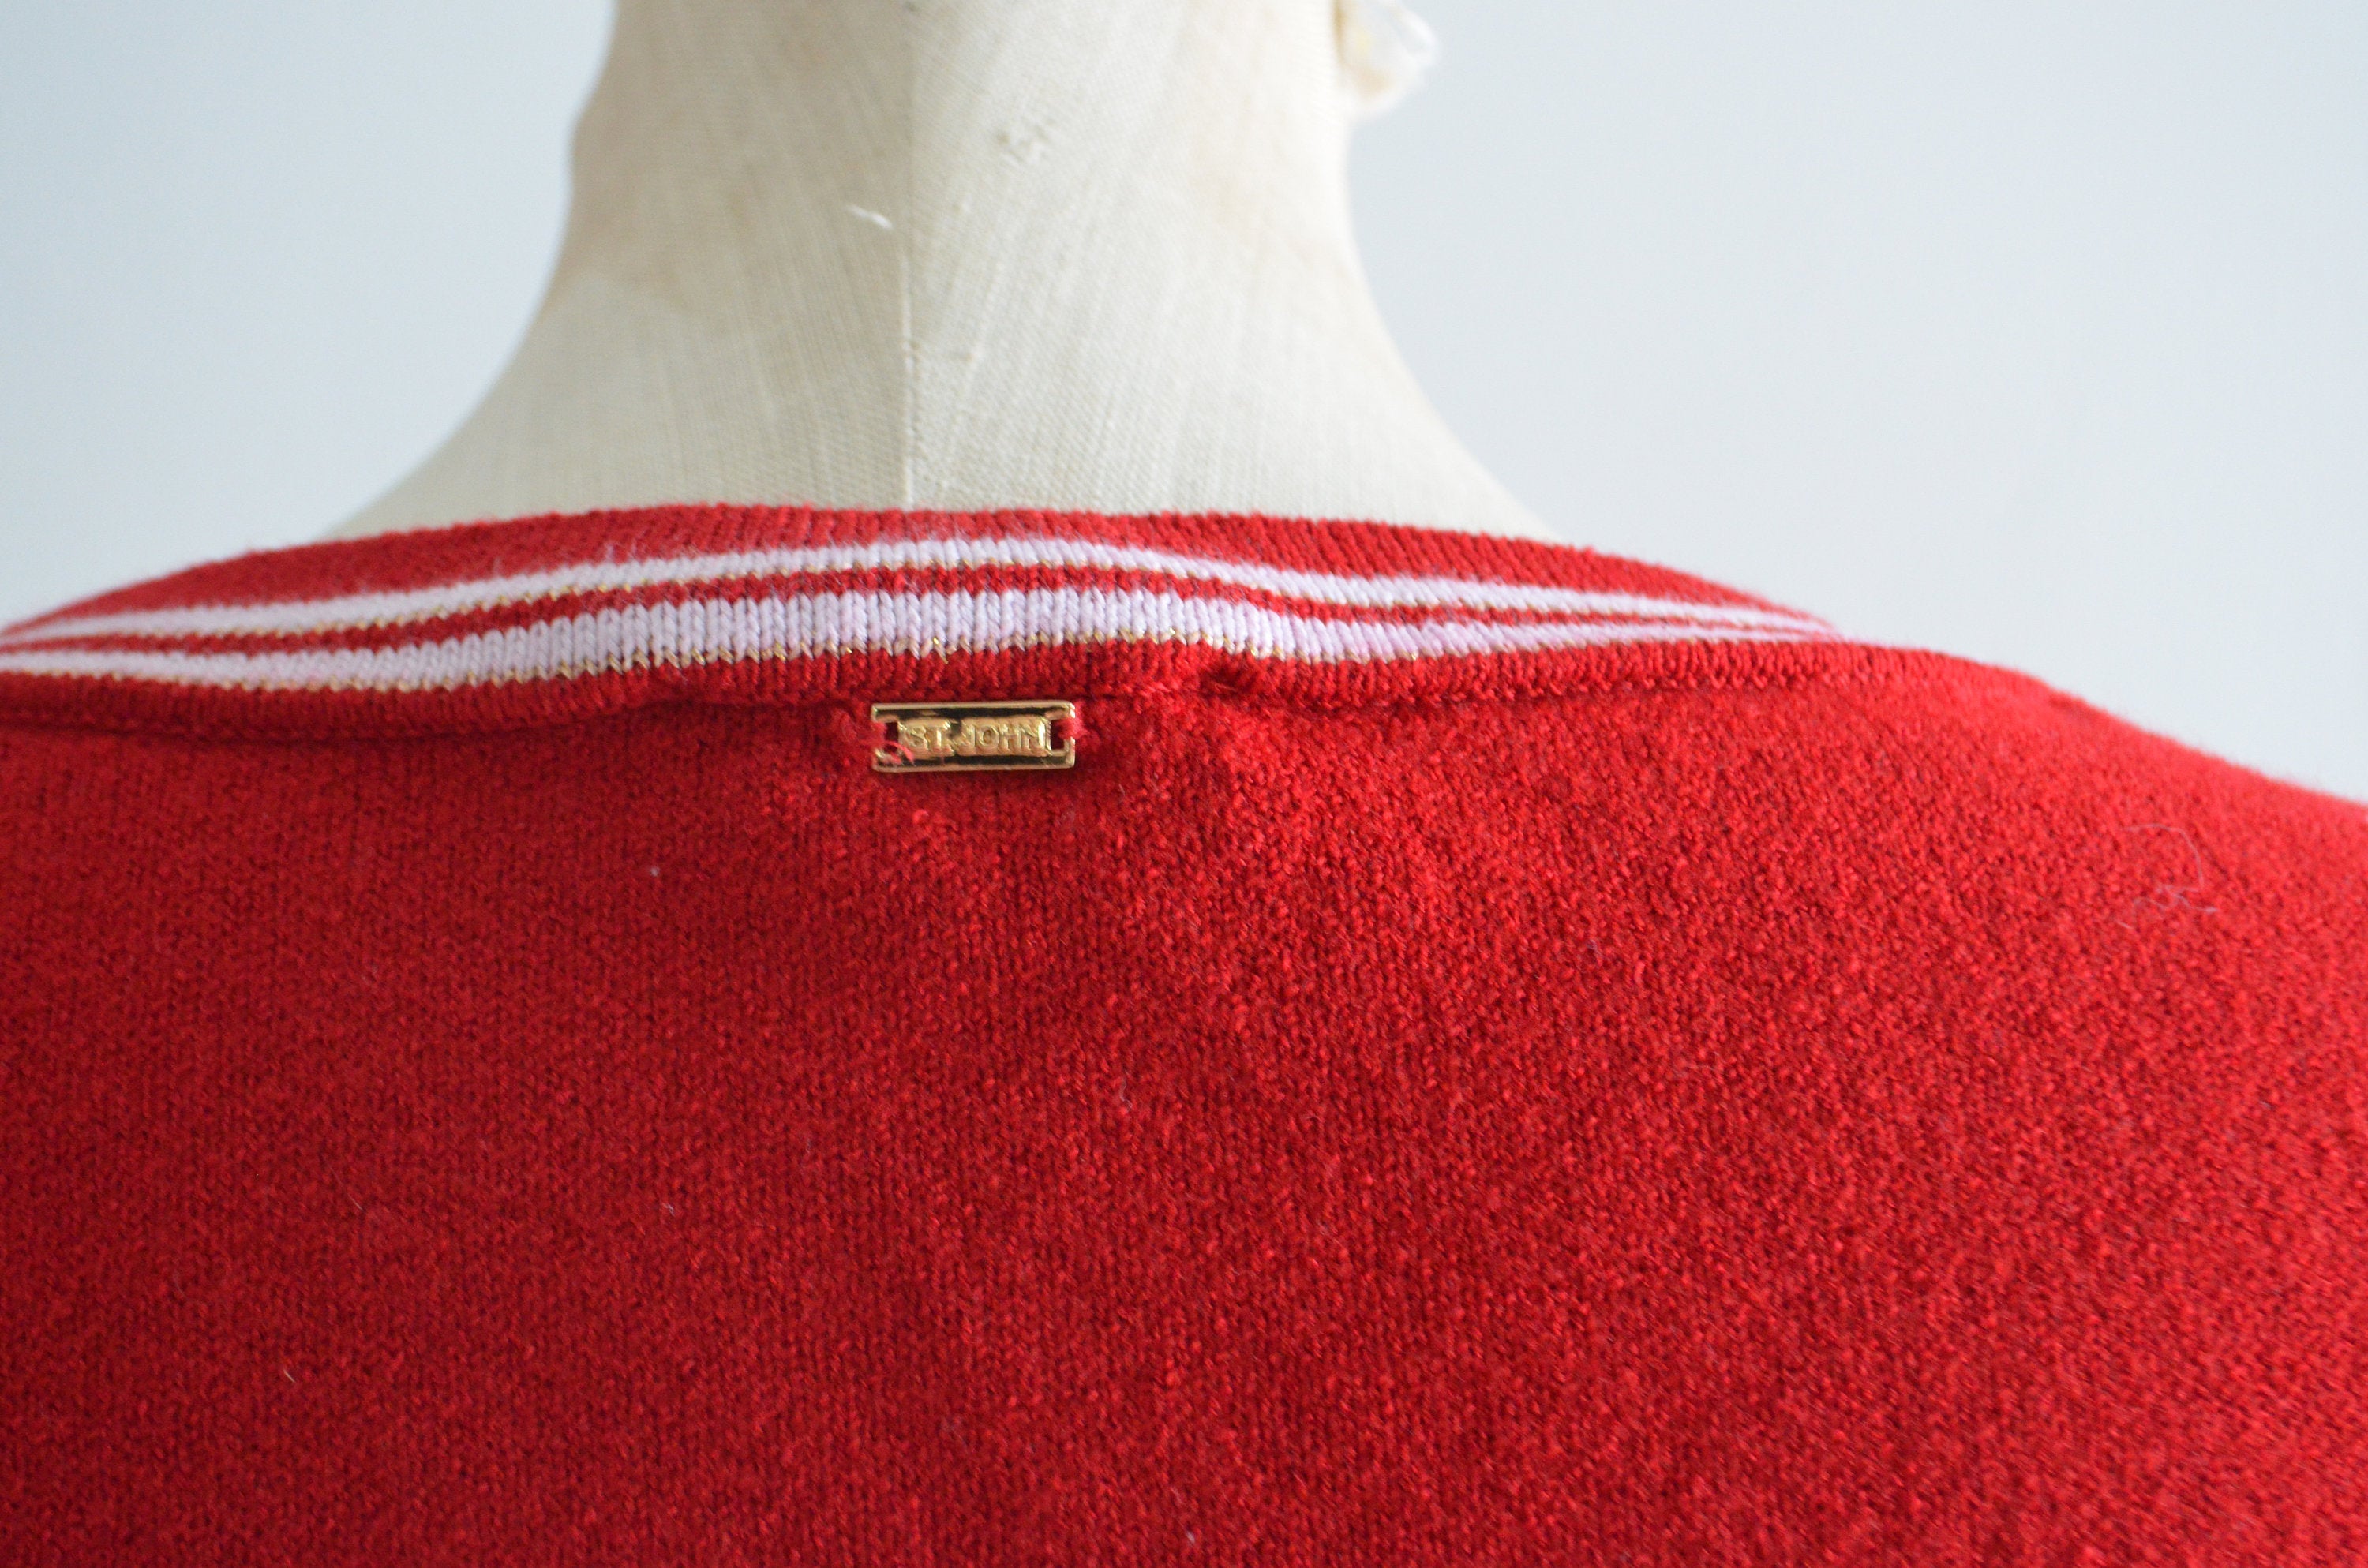 St John Sport Marie Gray Red Rib Knit Cropped Top Luxury Fine Gauge Stripe Neck Gold Fleur De Lis